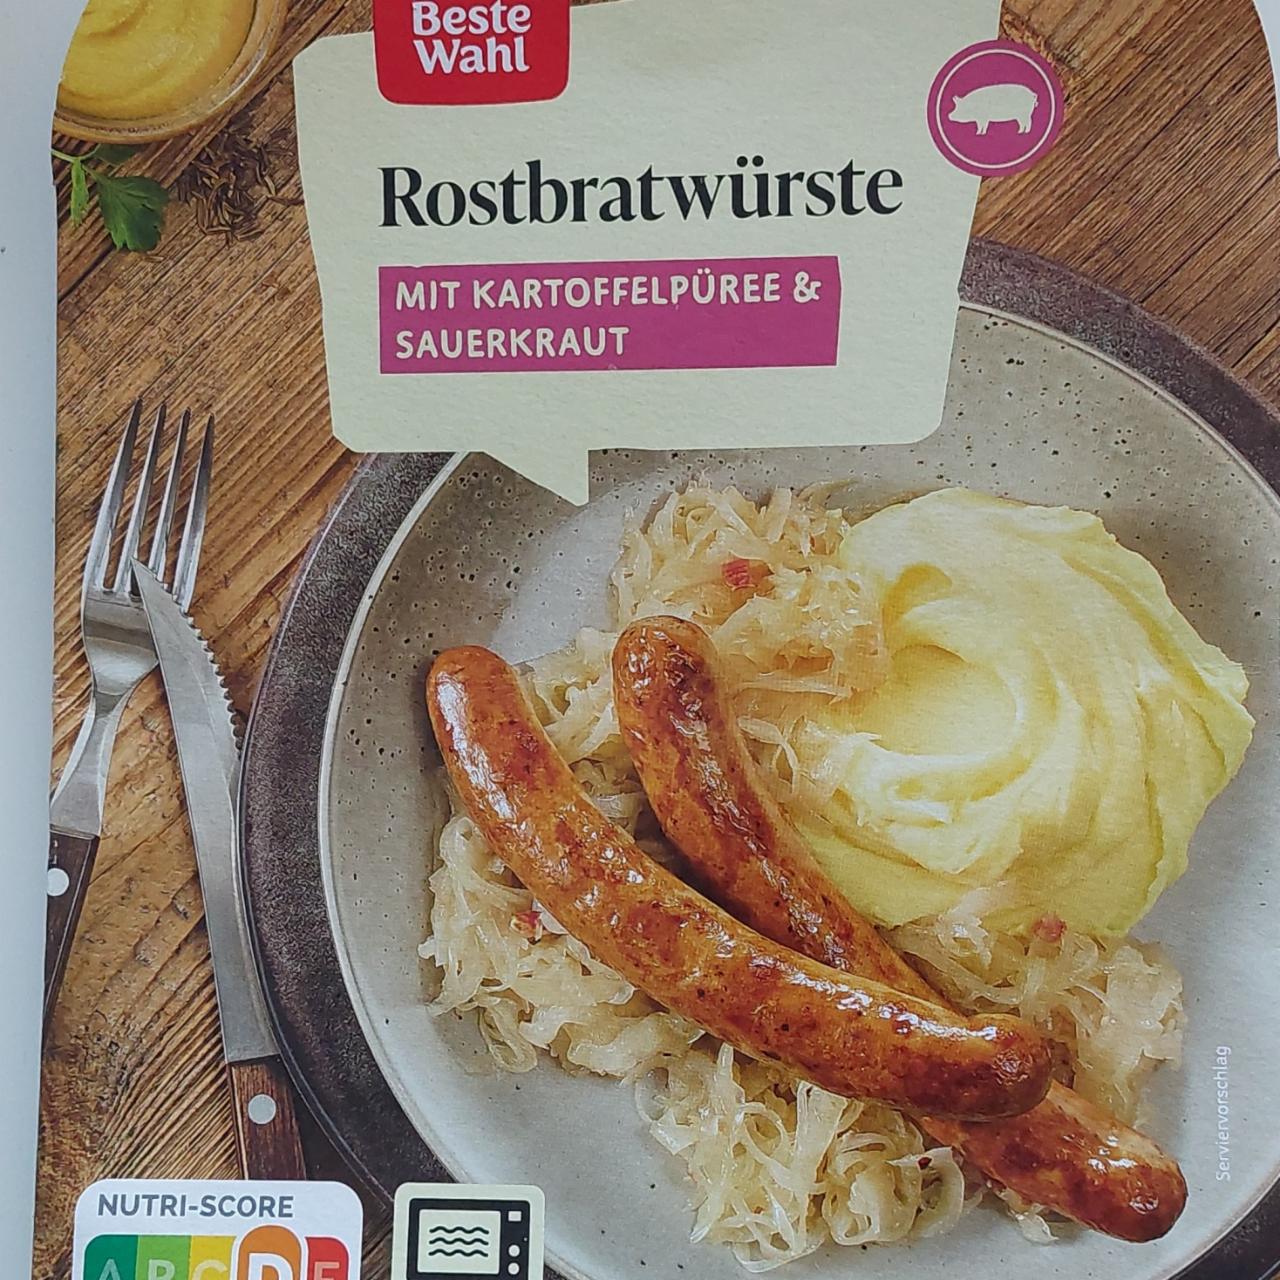 Fotografie - Rostbratwürste mit Kartoffelpüree & Sauerkraut Rewe beste wahl